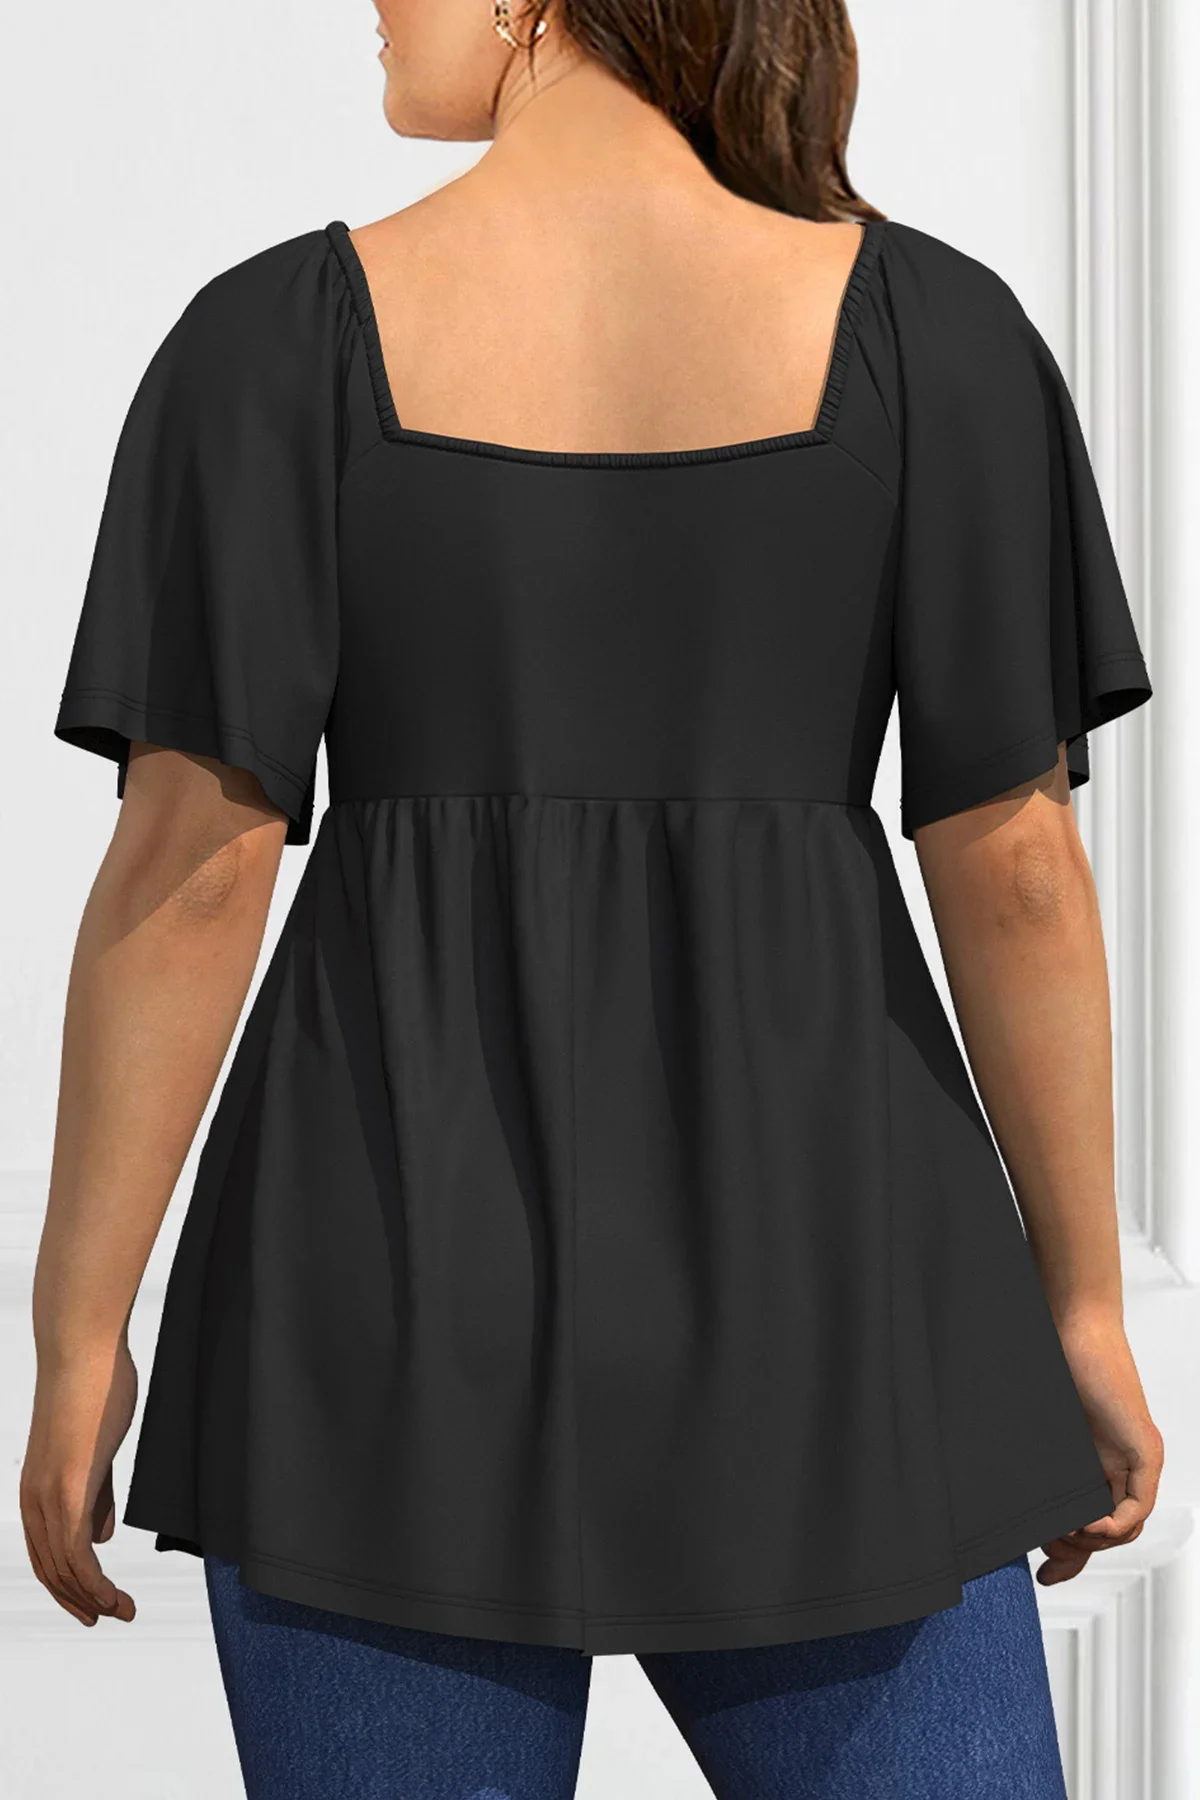 Blusa plisada informal con cordón para mujer, Camiseta con cuello cuadrado, Top elegante de manga corta para verano, talla grande